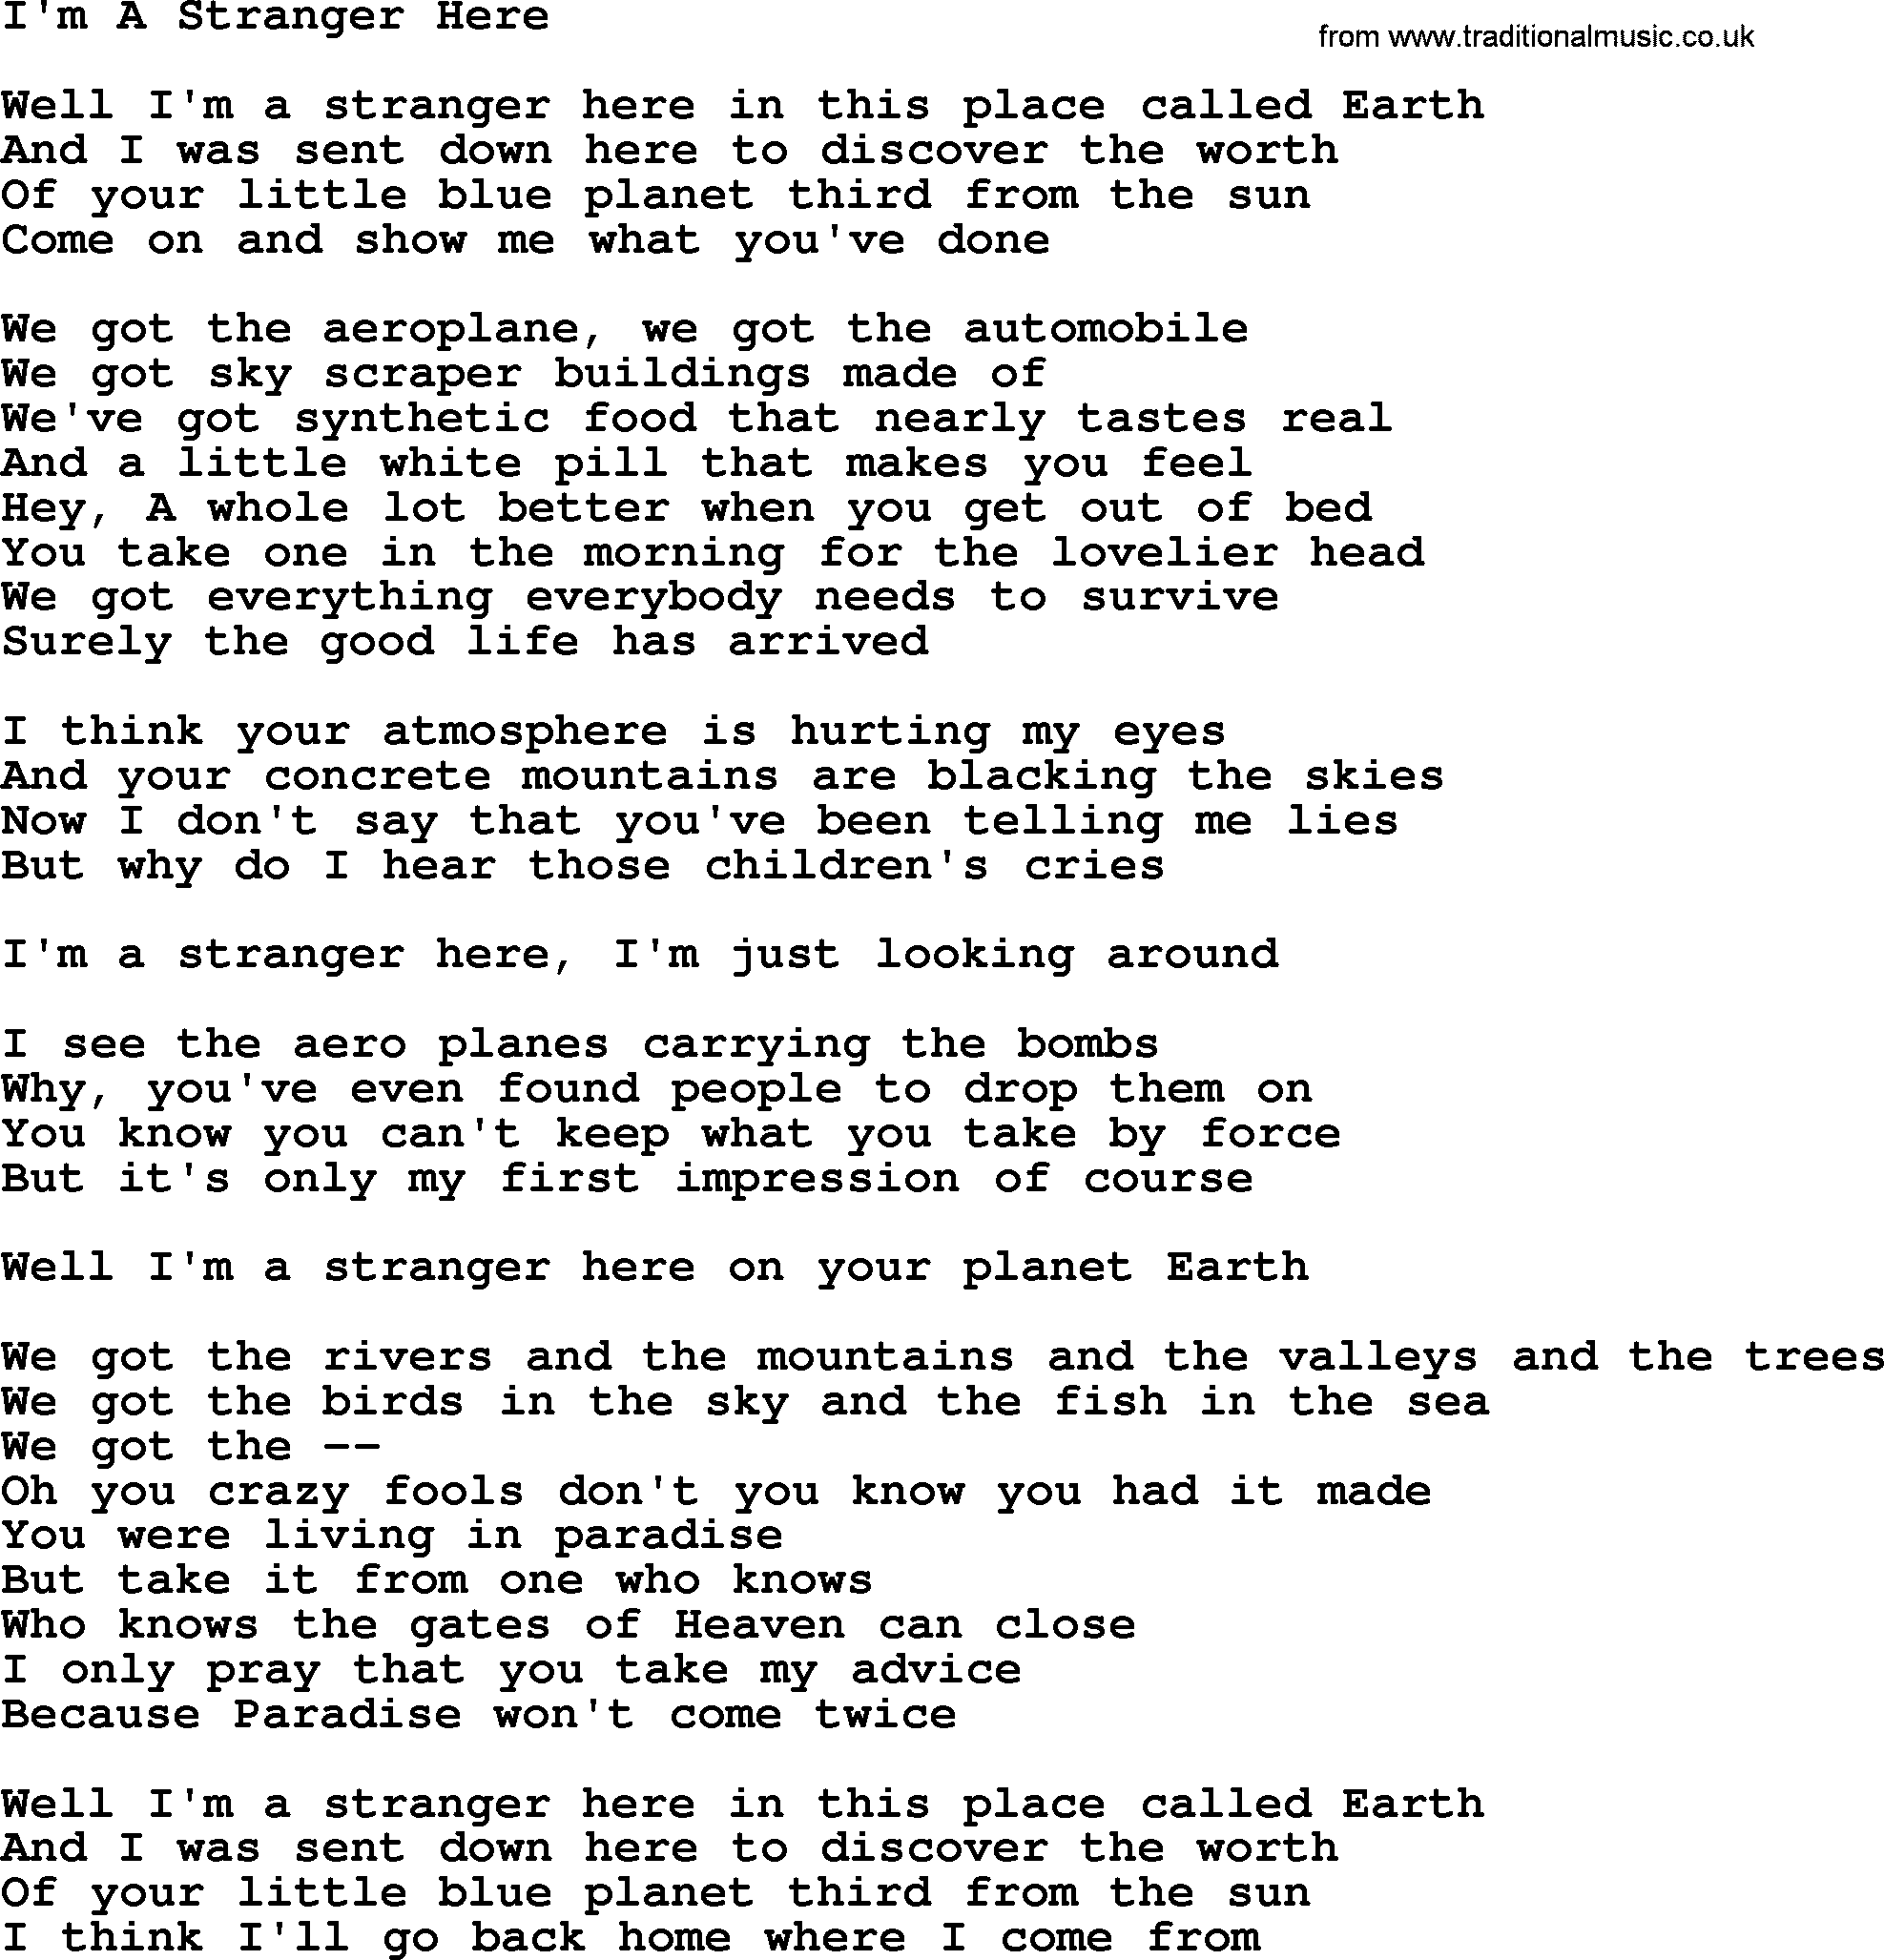 The Byrds song I'm A Stranger Here, lyrics